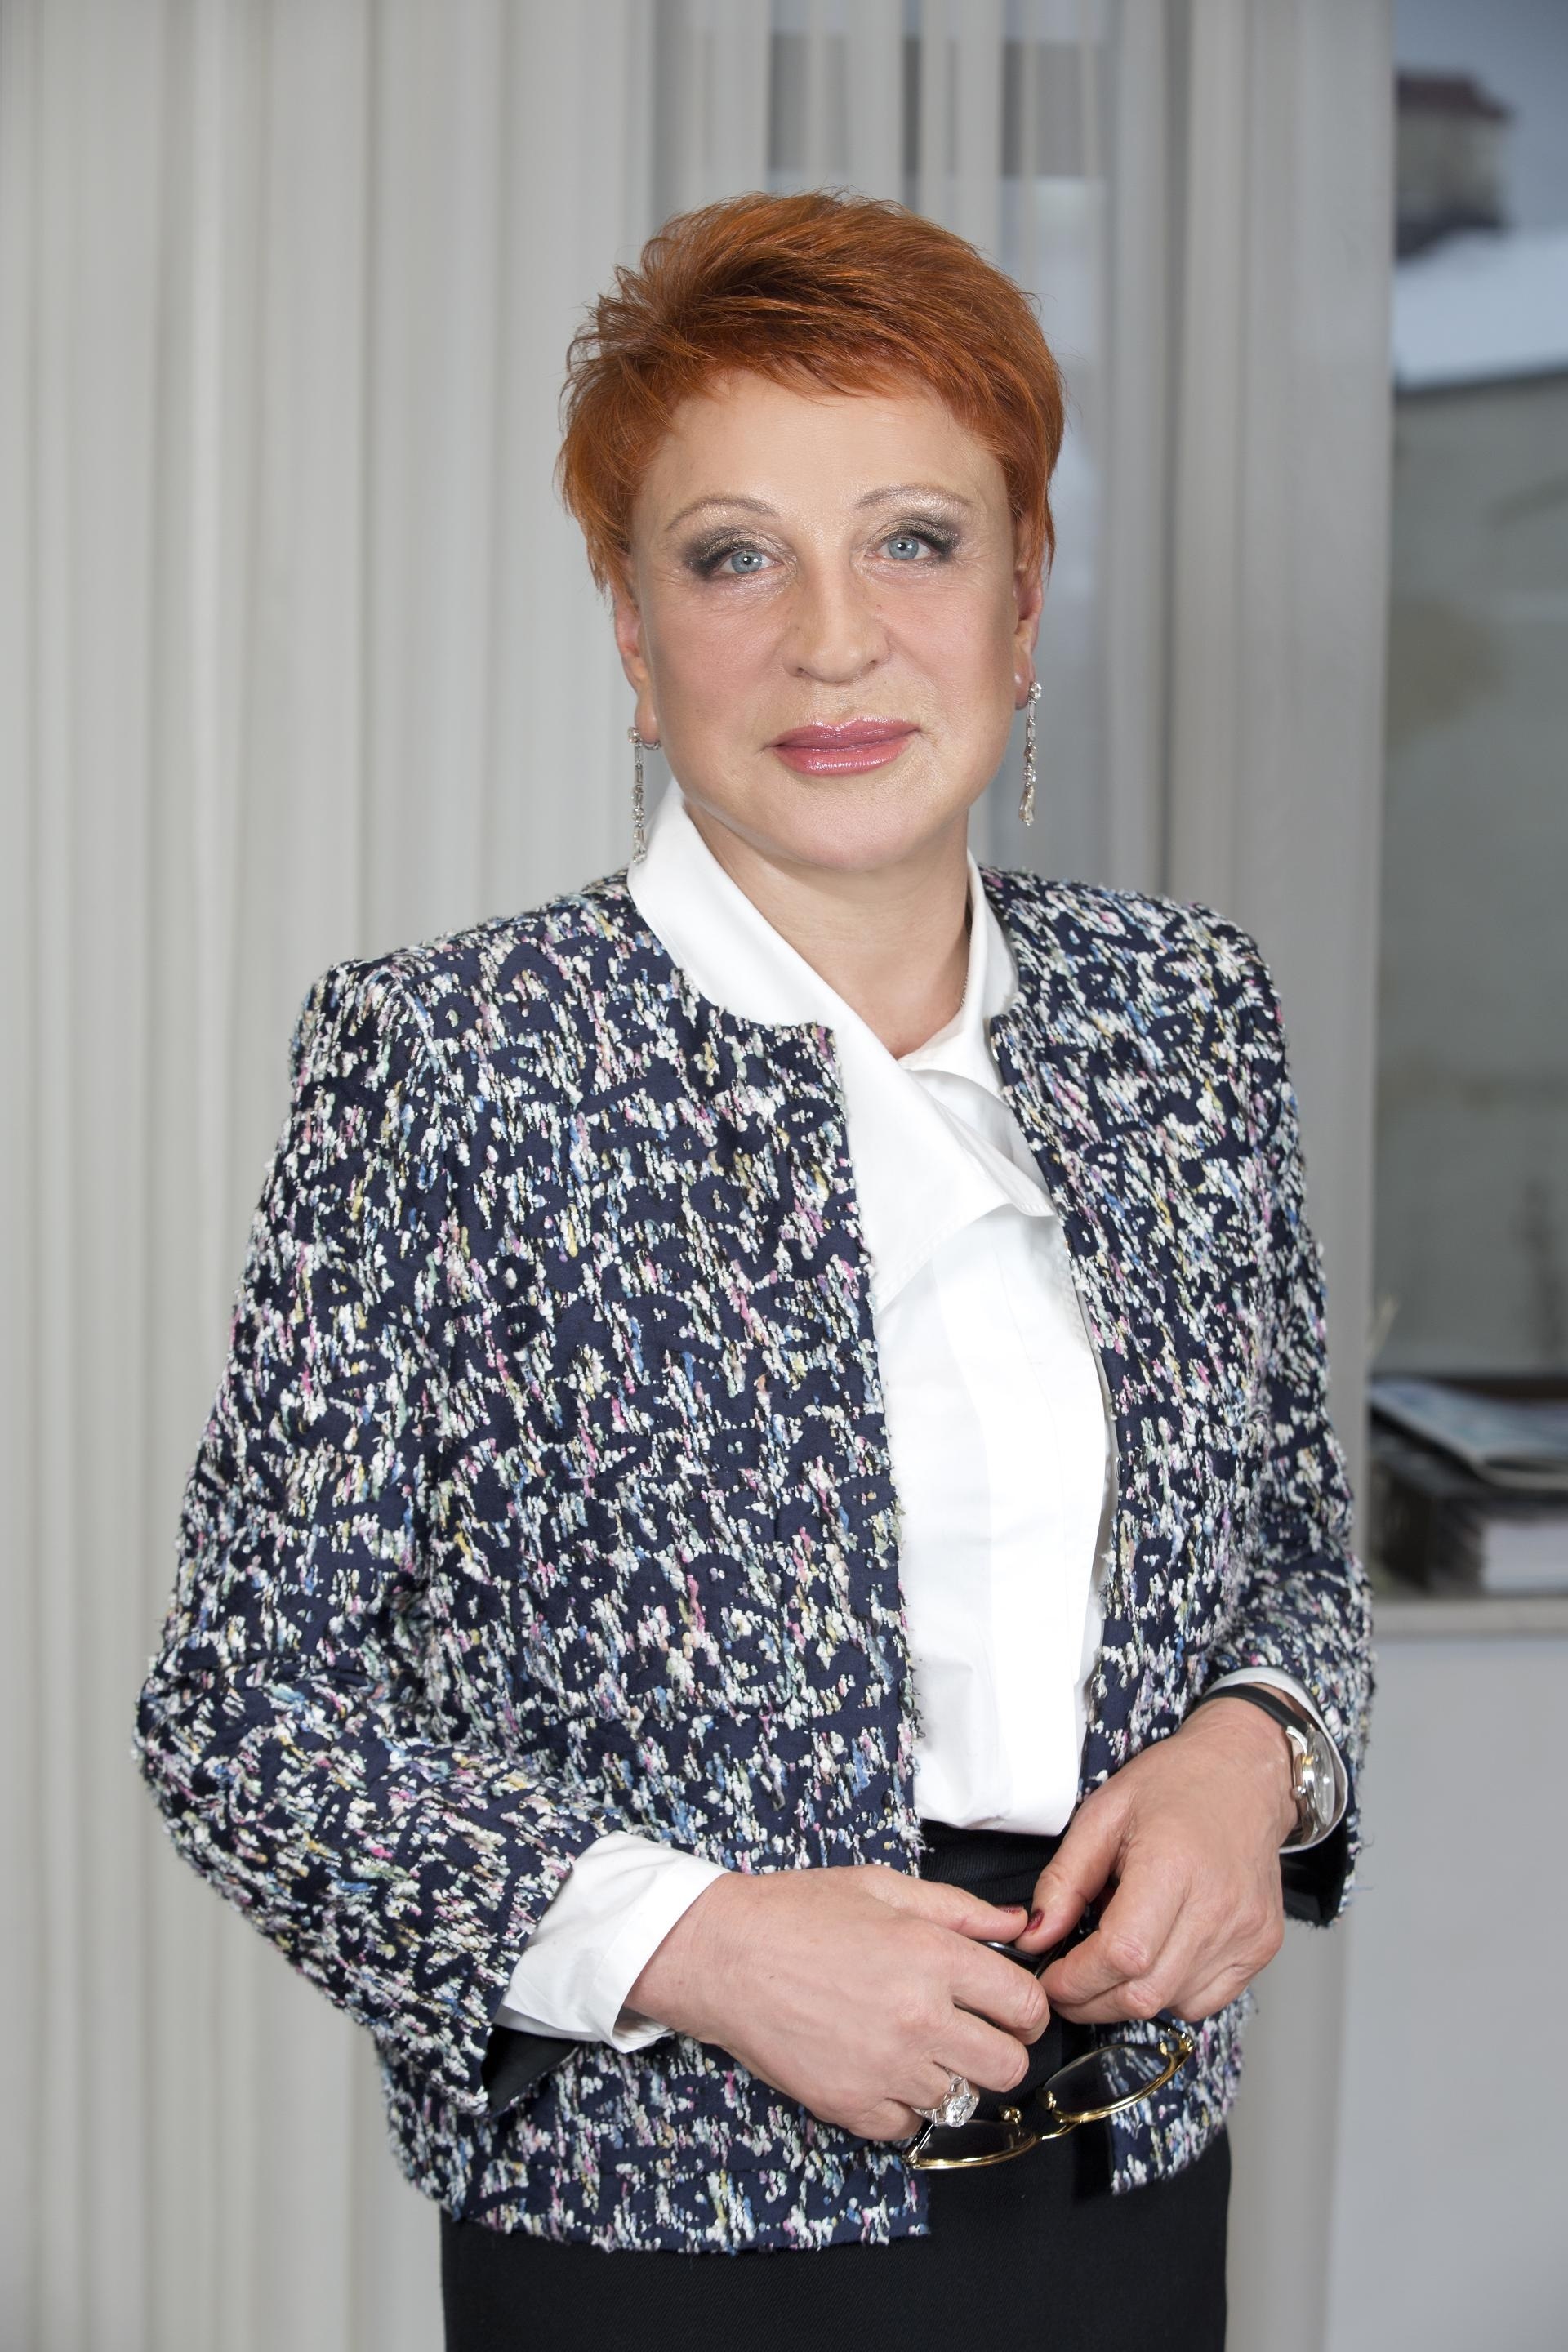 Генеральным директором компании является Мартьянова Надежда Васильевна. Она занимает этот пост с 2000 года. Председатель совета директоров – Ромоданский Константин Олегович.